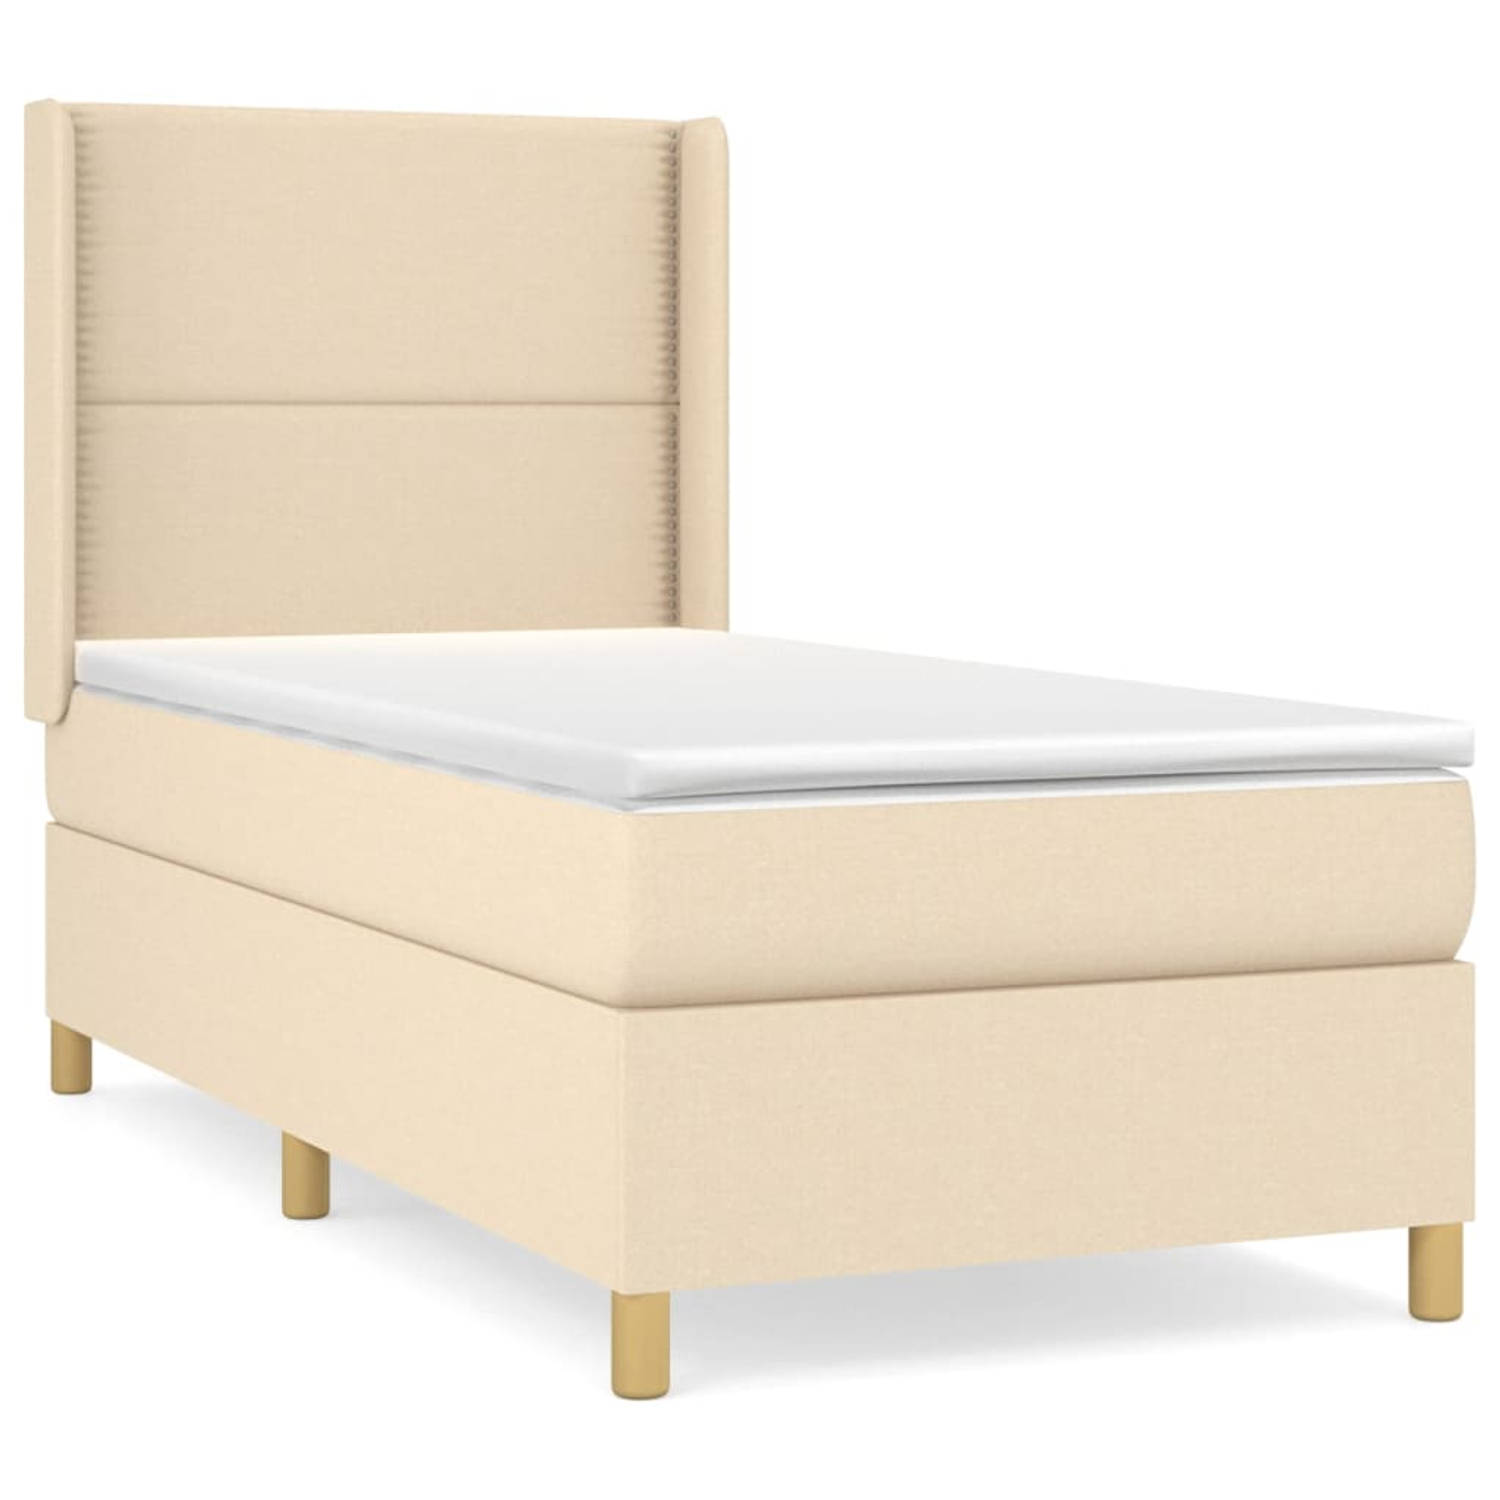 The Living Store Boxspringbed - Duurzaam Comfort - 90 x 200 cm - Maximaal ontspannen en aangenaam slapen